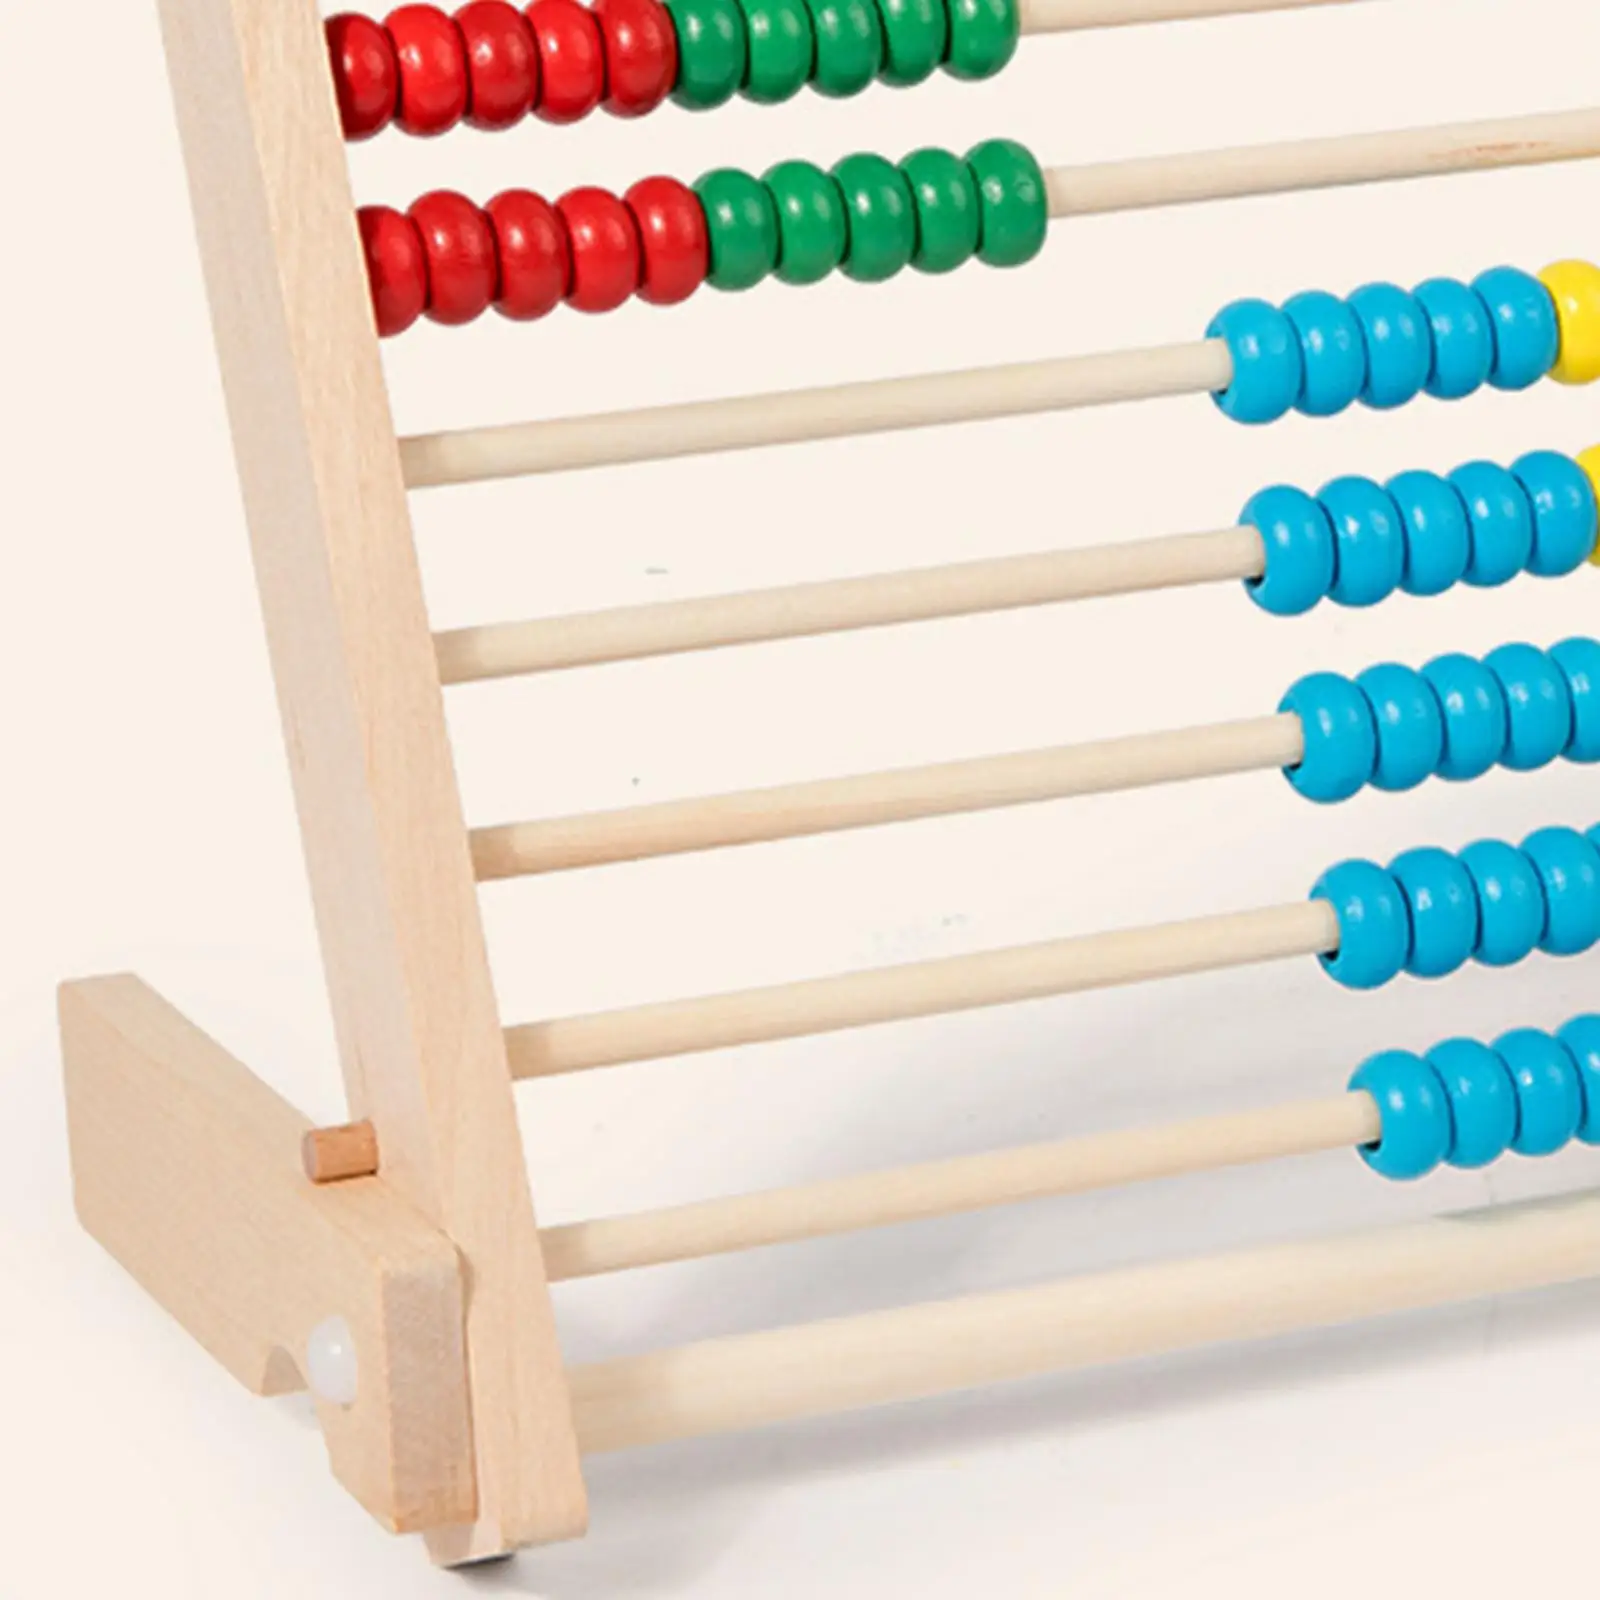 Add Subtract Abacus Development Kids Mathematics Toy Wooden Math Game Toy for Children Elementary Kids Kindergarten Boys Girls